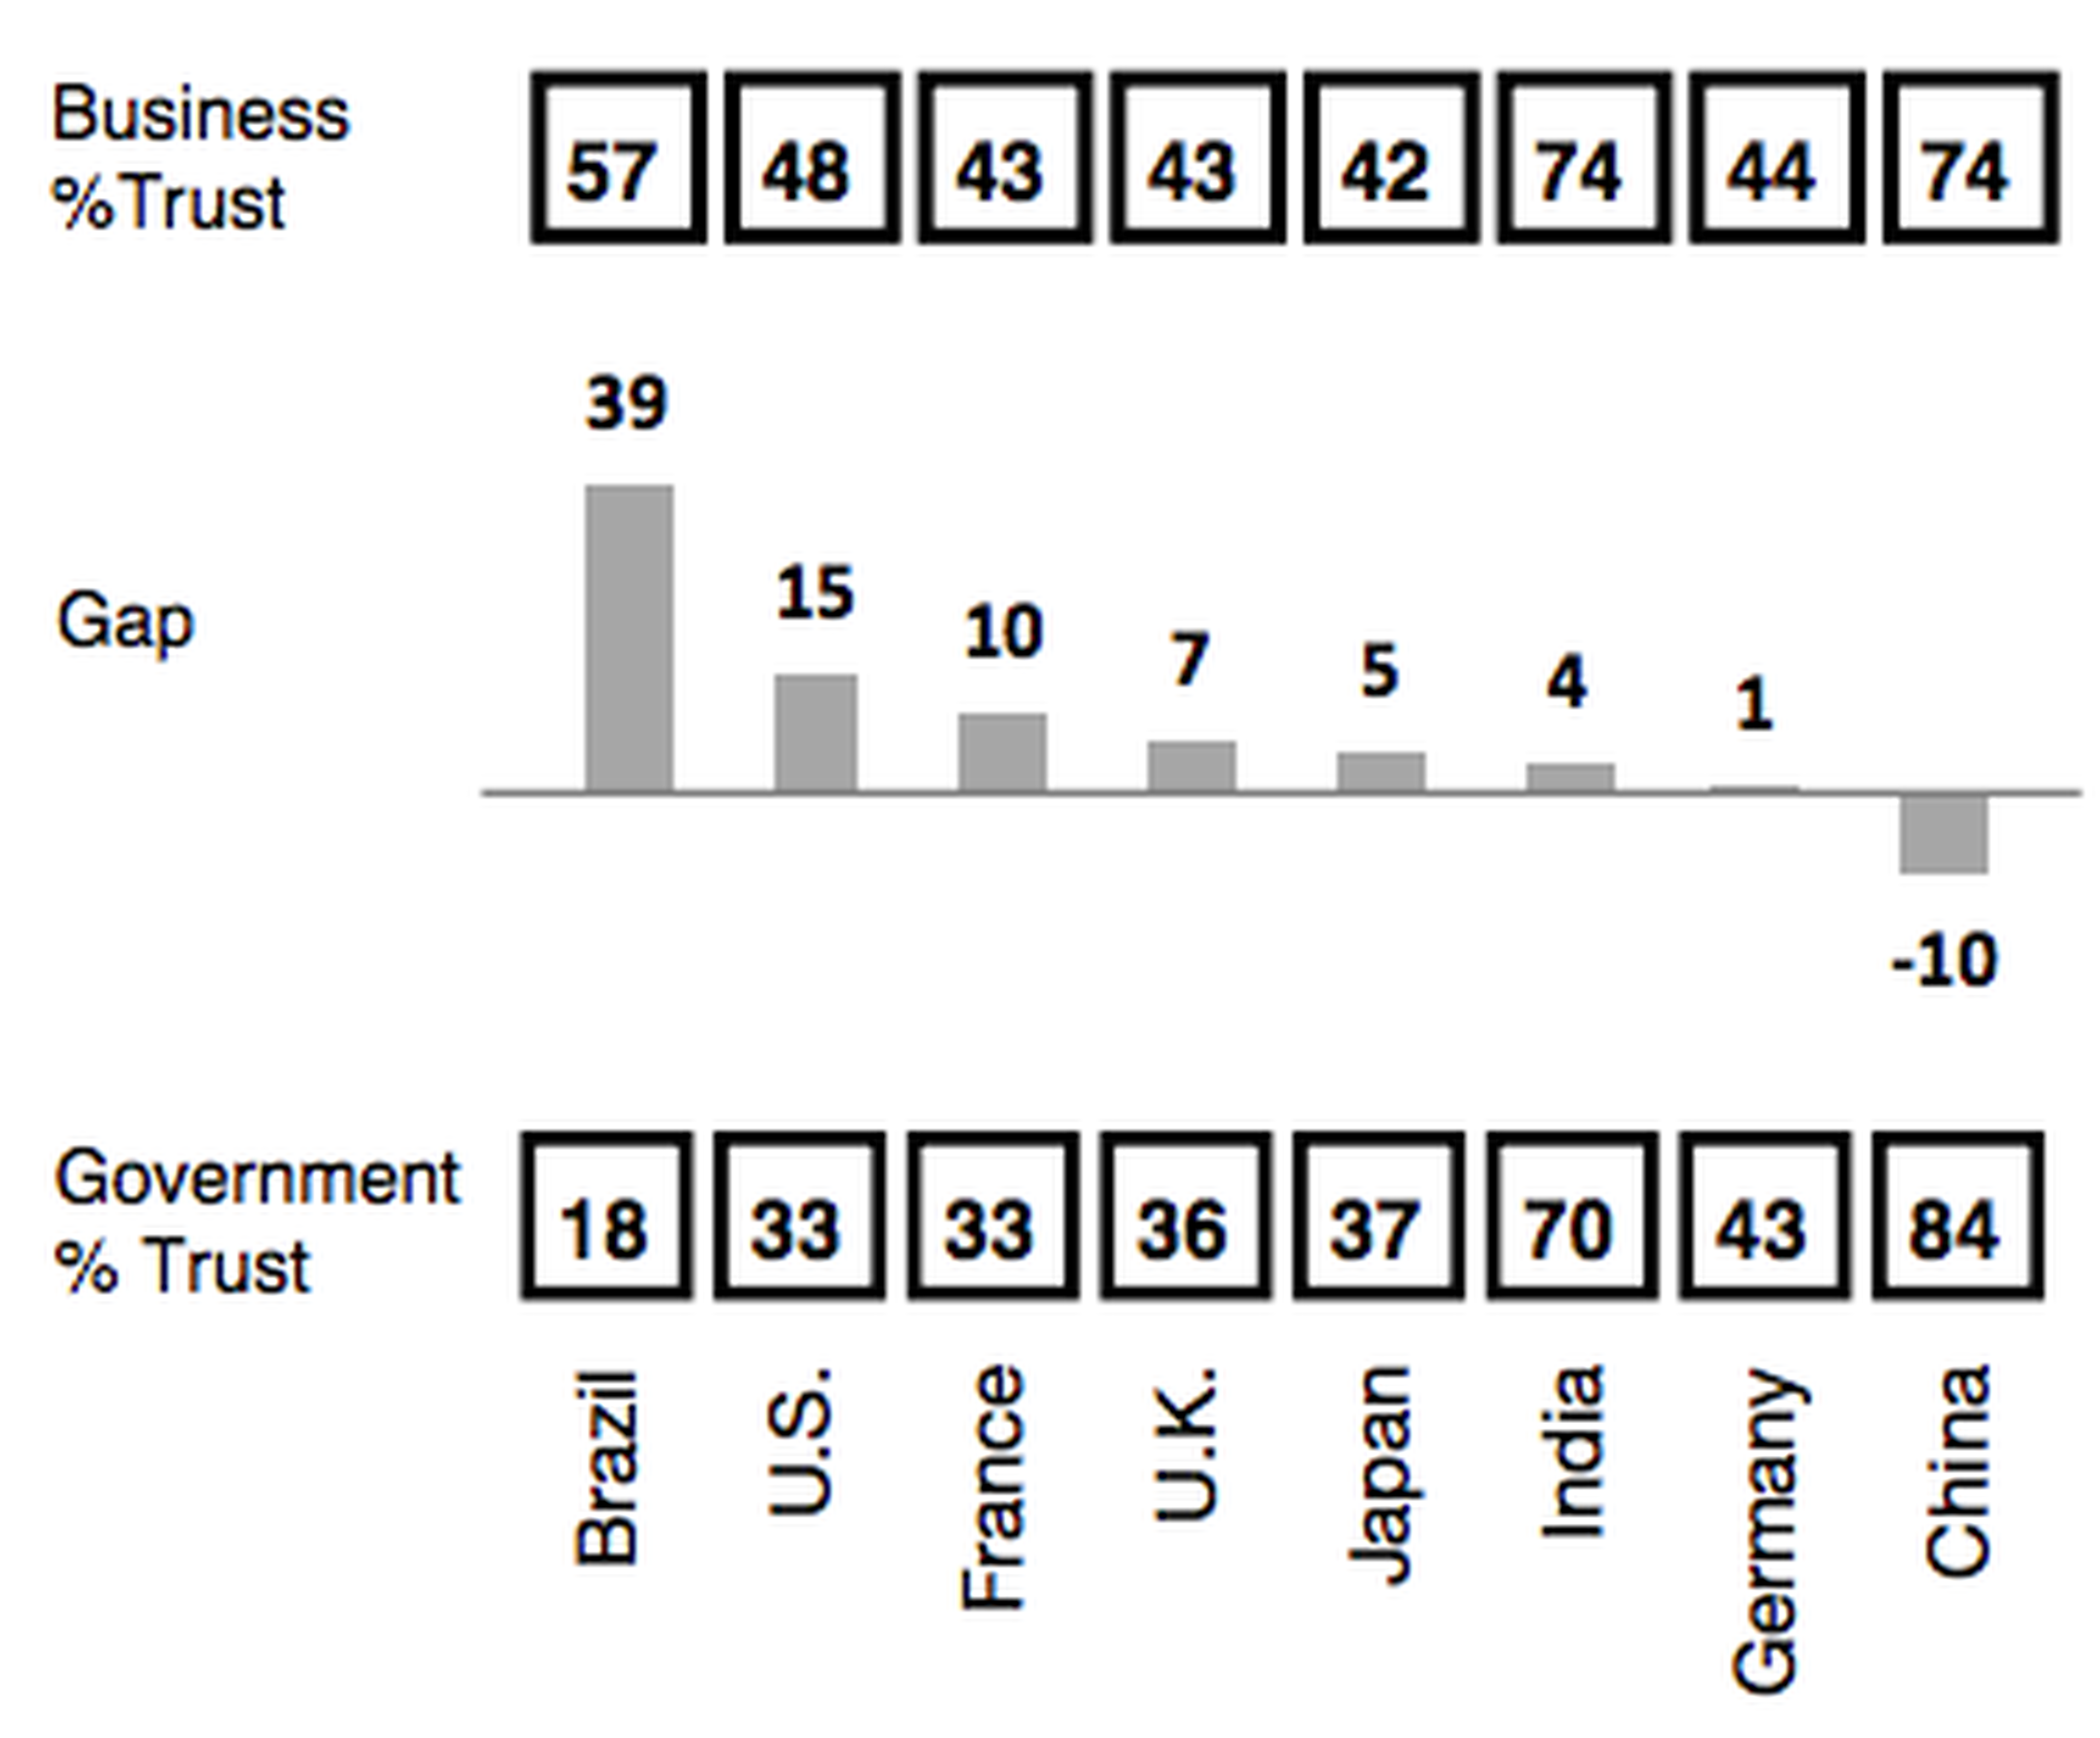 Confianza en las empresas vs confianza en el Gobierno, por países